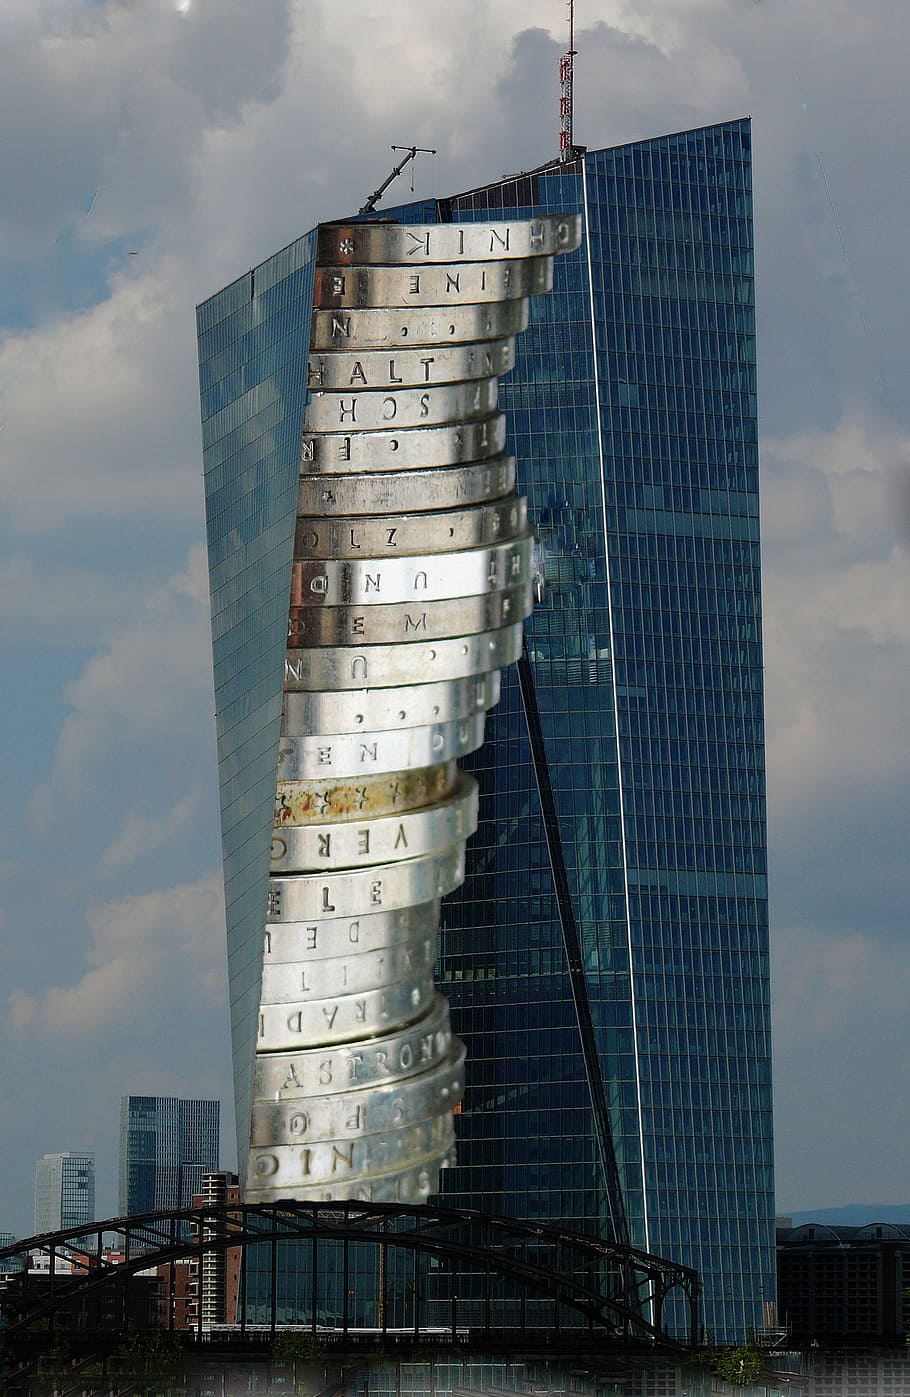 Hd Wallpaper Ecb European Central Bank Skyscraper Glass Facade Building Wallpaper Flare